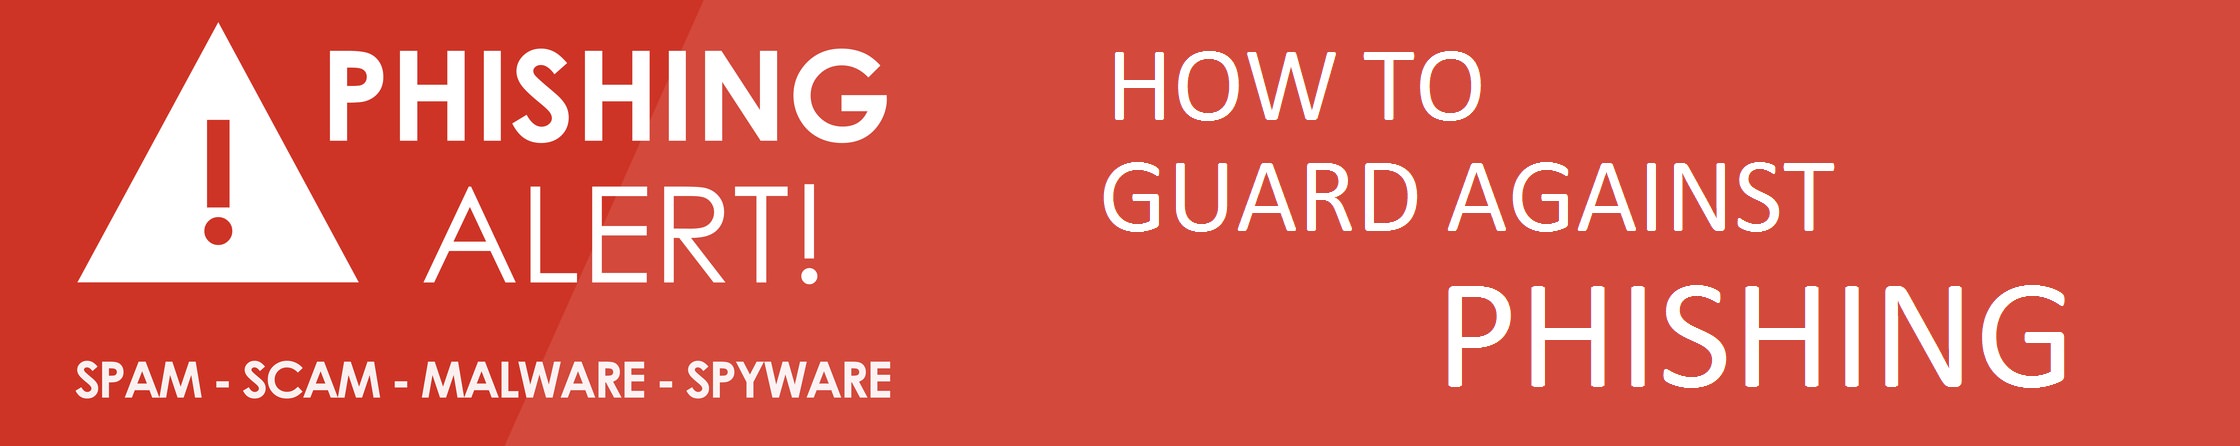 guard_against_phishing_banner